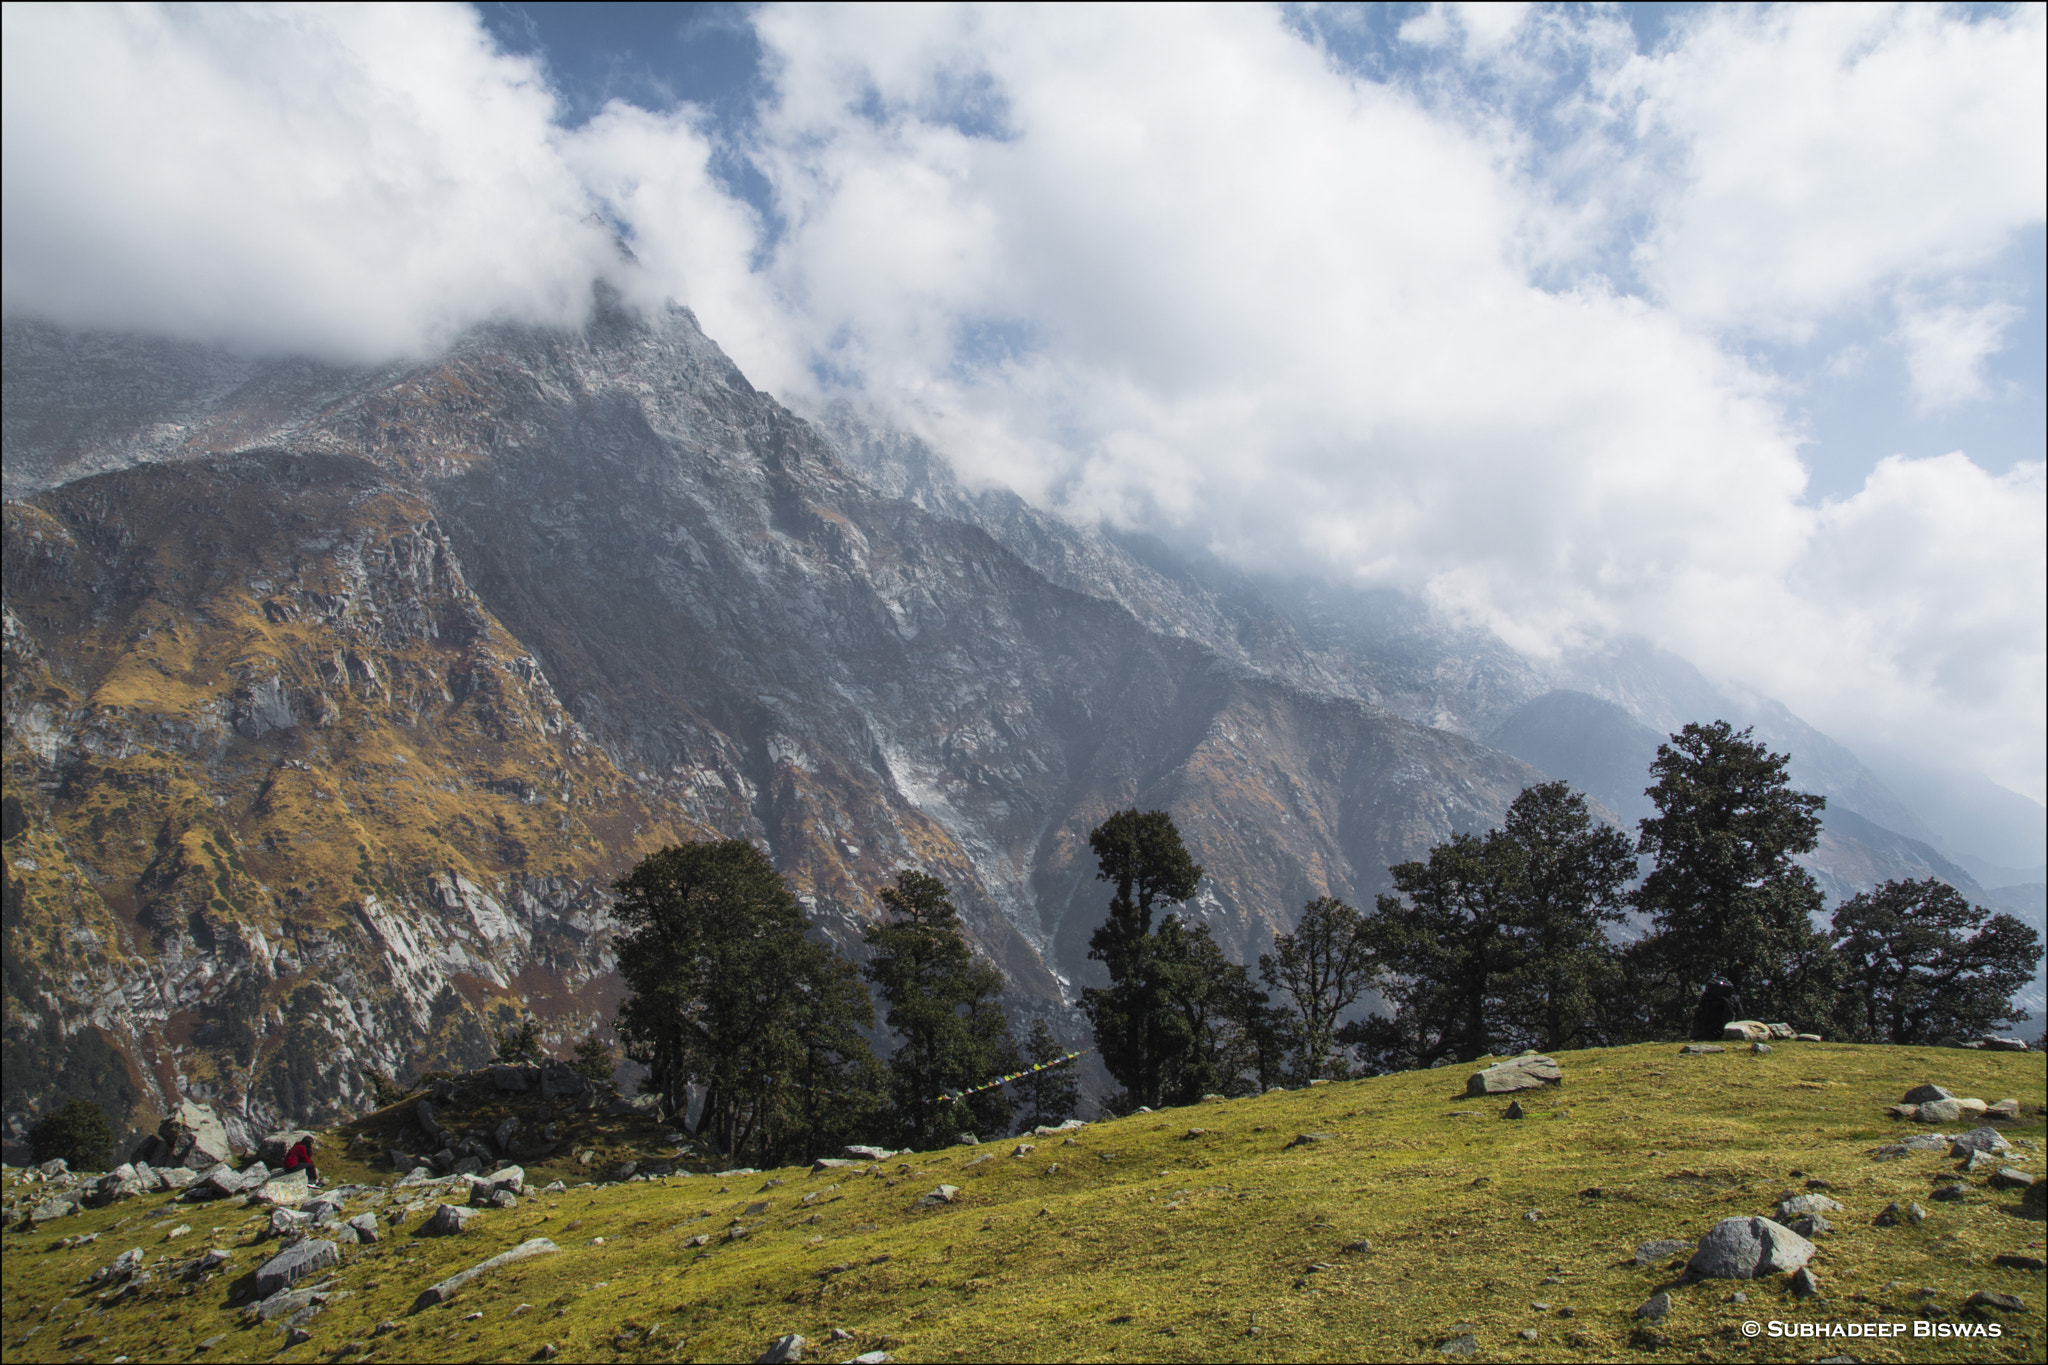 Nikon D5200 + Tamron SP AF 17-50mm F2.8 XR Di II LD Aspherical (IF) sample photo. Himalayas photography